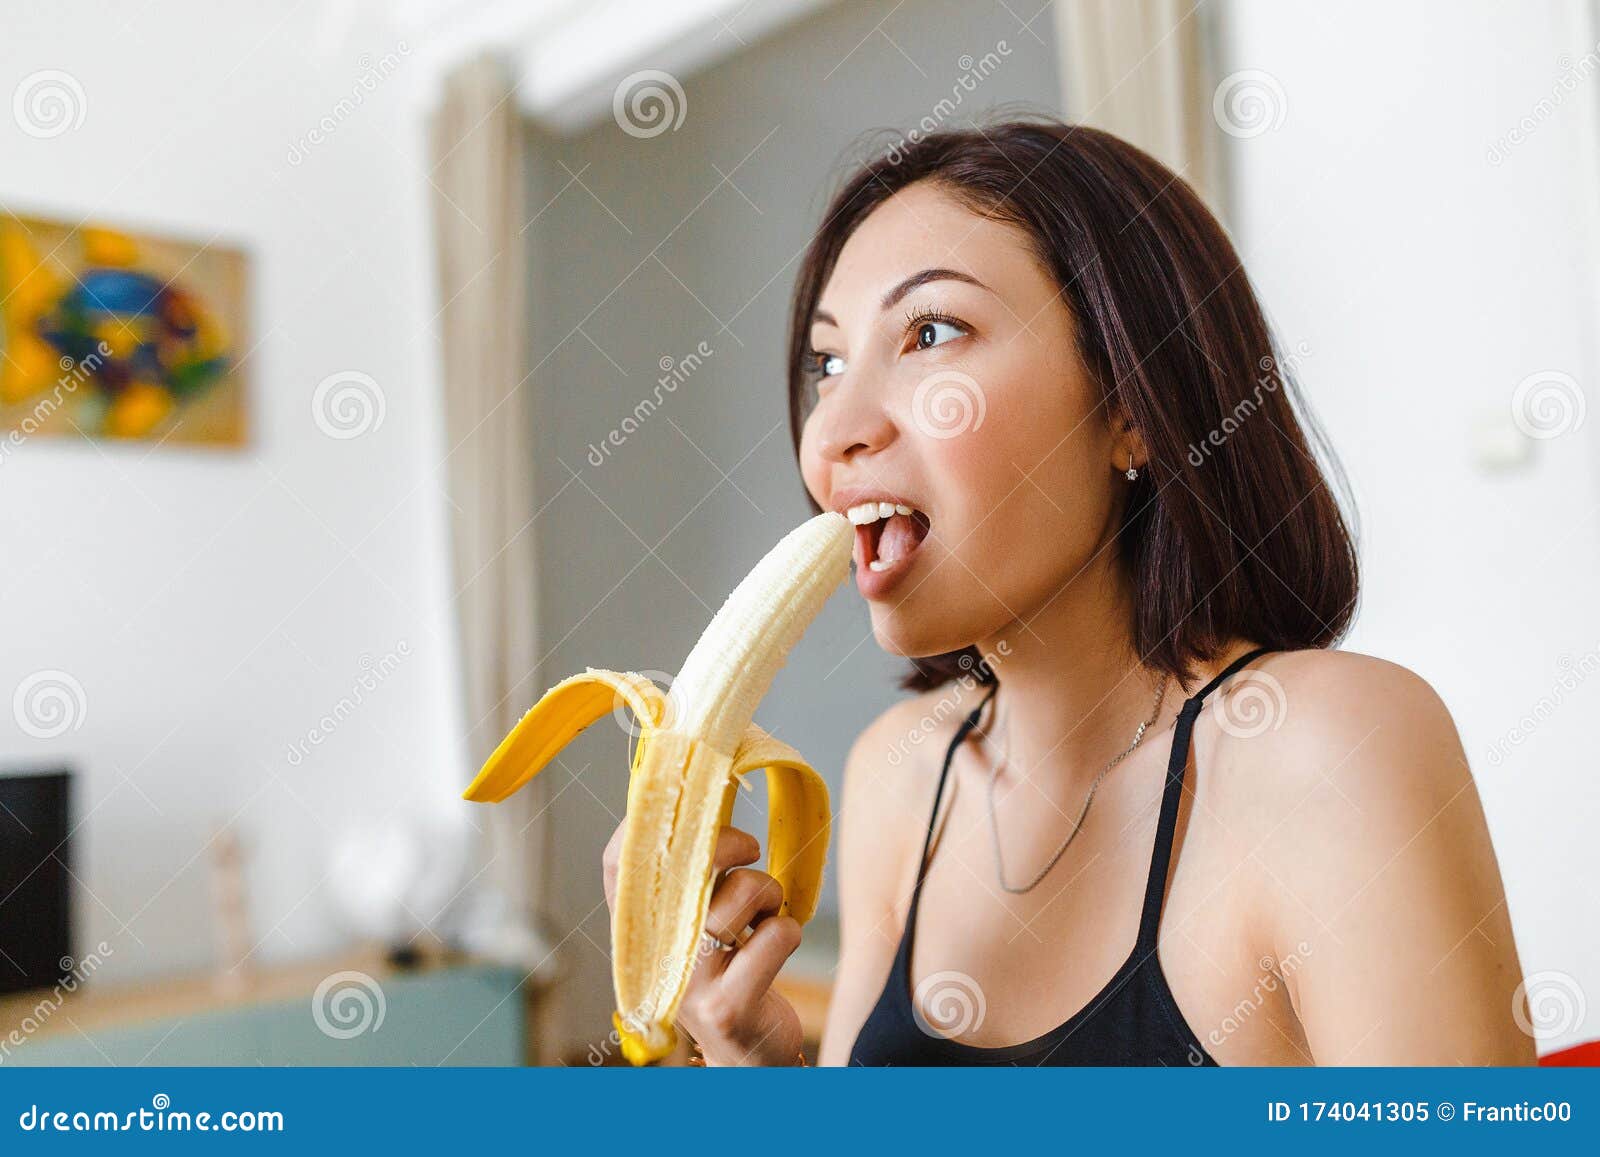 Eating bananas woman Downsides of